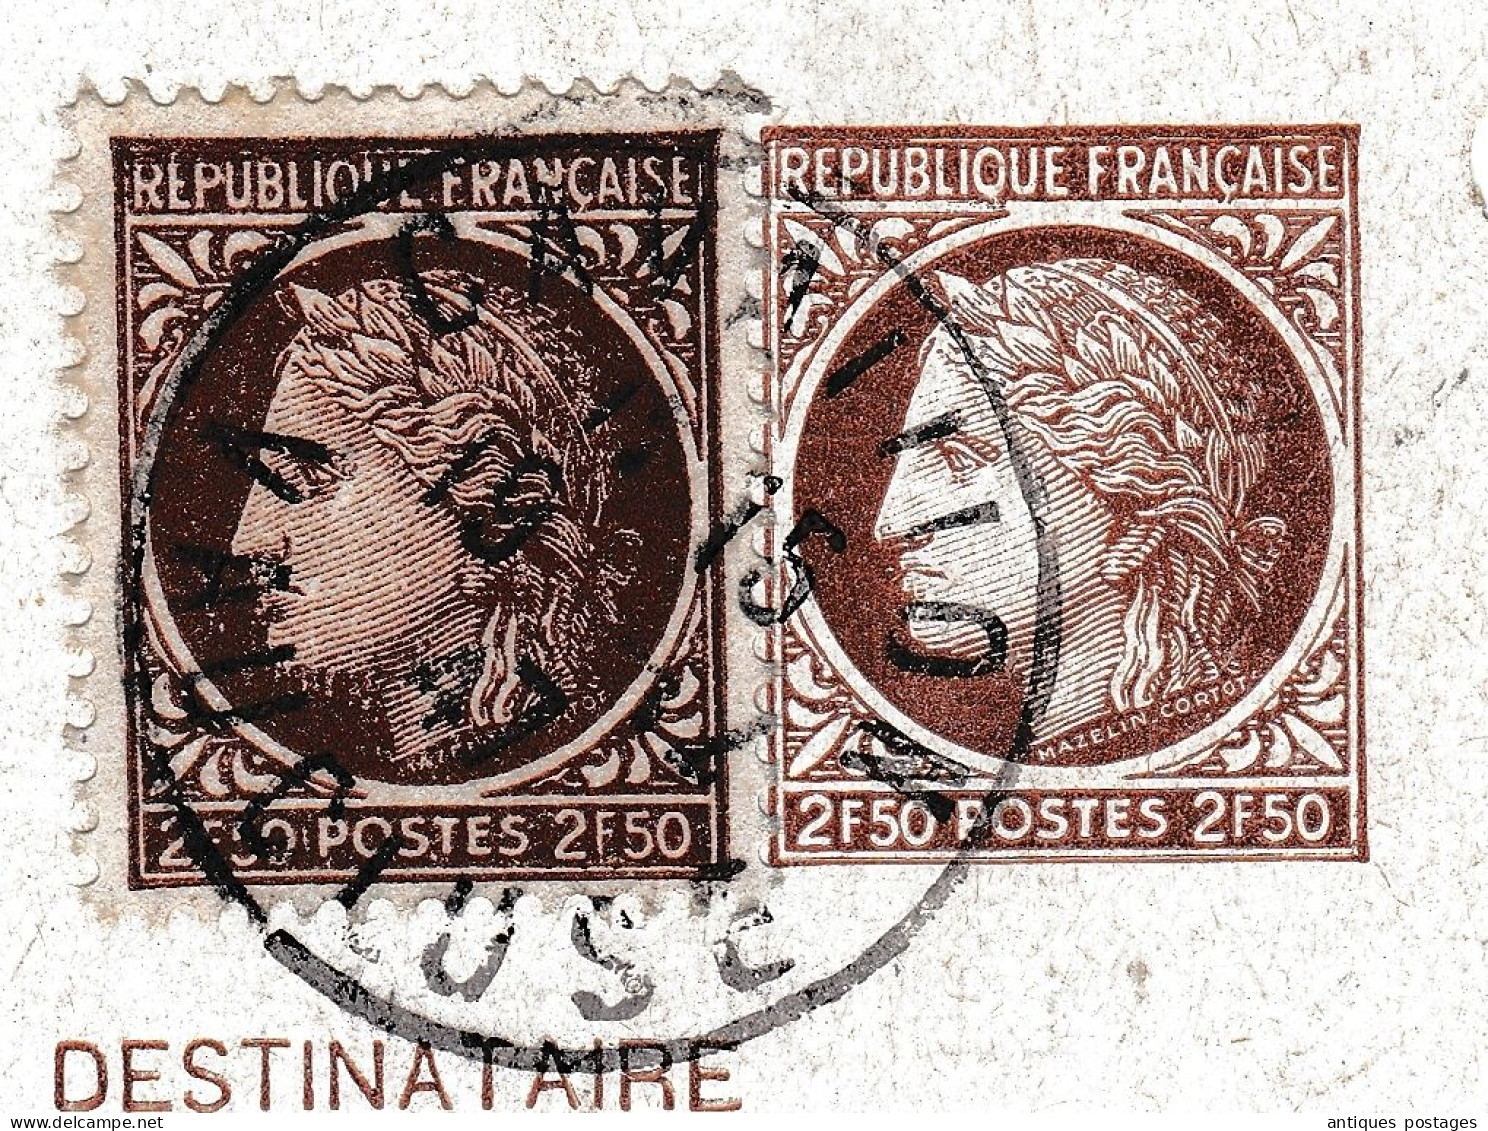 Entier Postal 1947 Cérès De Mazelin Cavaillon Vaucluse Tourcoing Moulin Fils & Cie Tissus - 1945-47 Ceres (Mazelin)